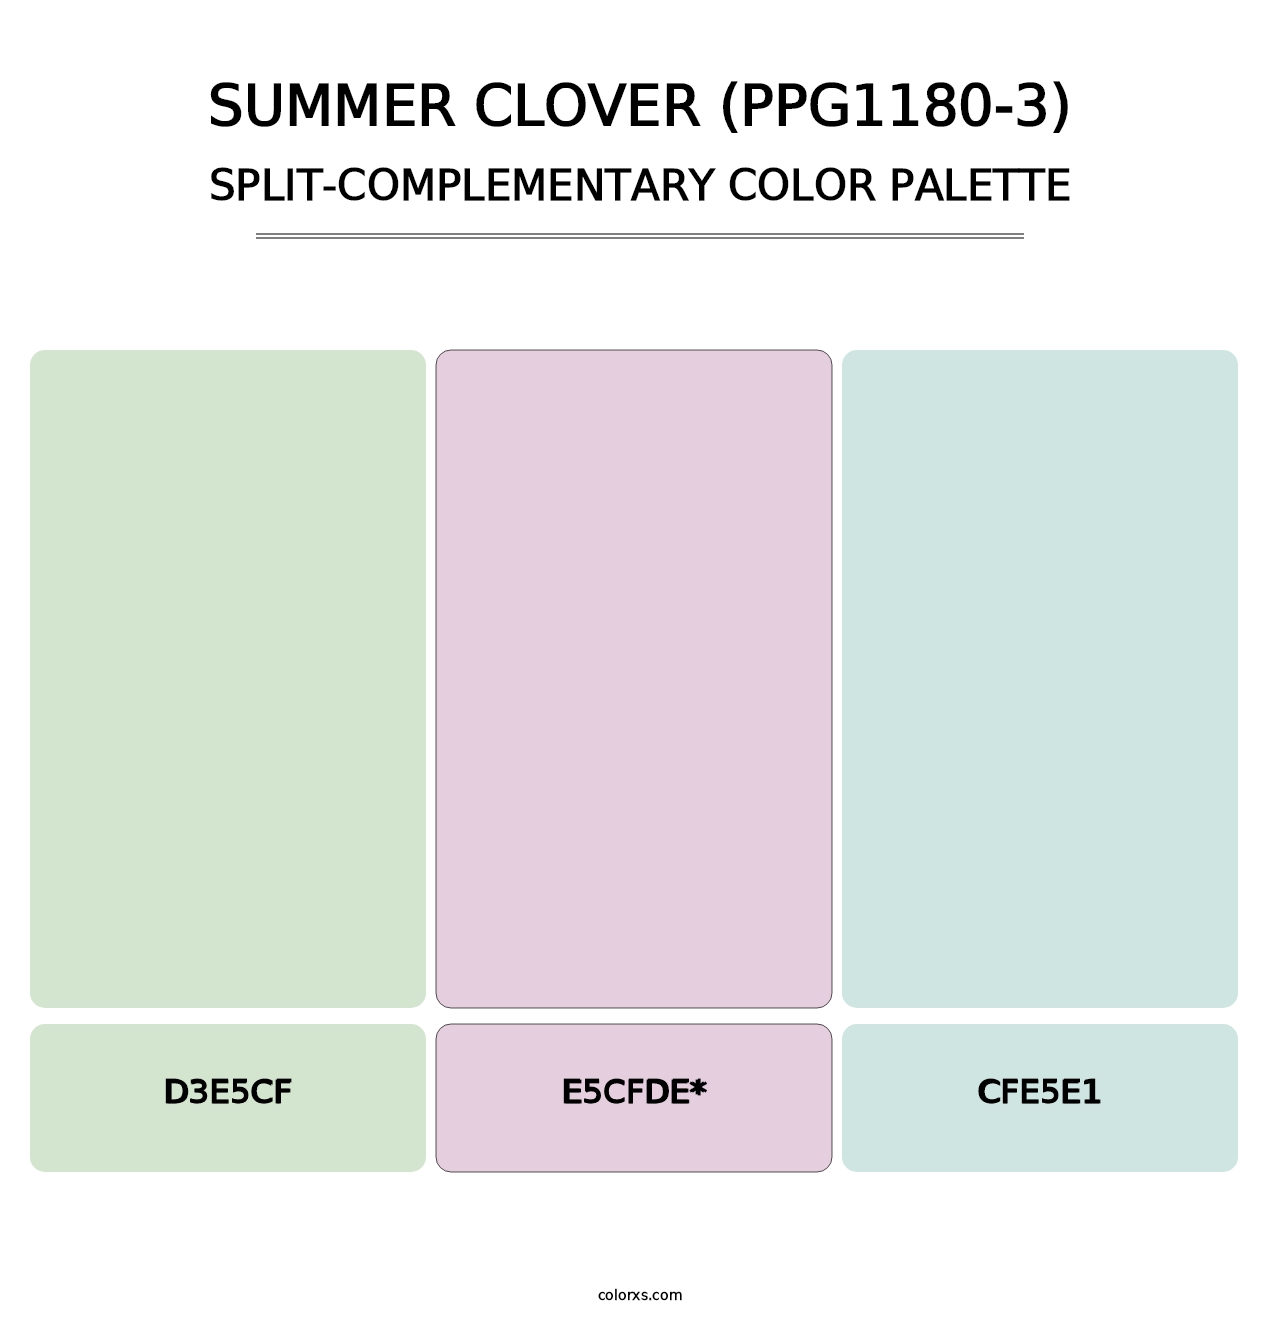 Summer Clover (PPG1180-3) - Split-Complementary Color Palette